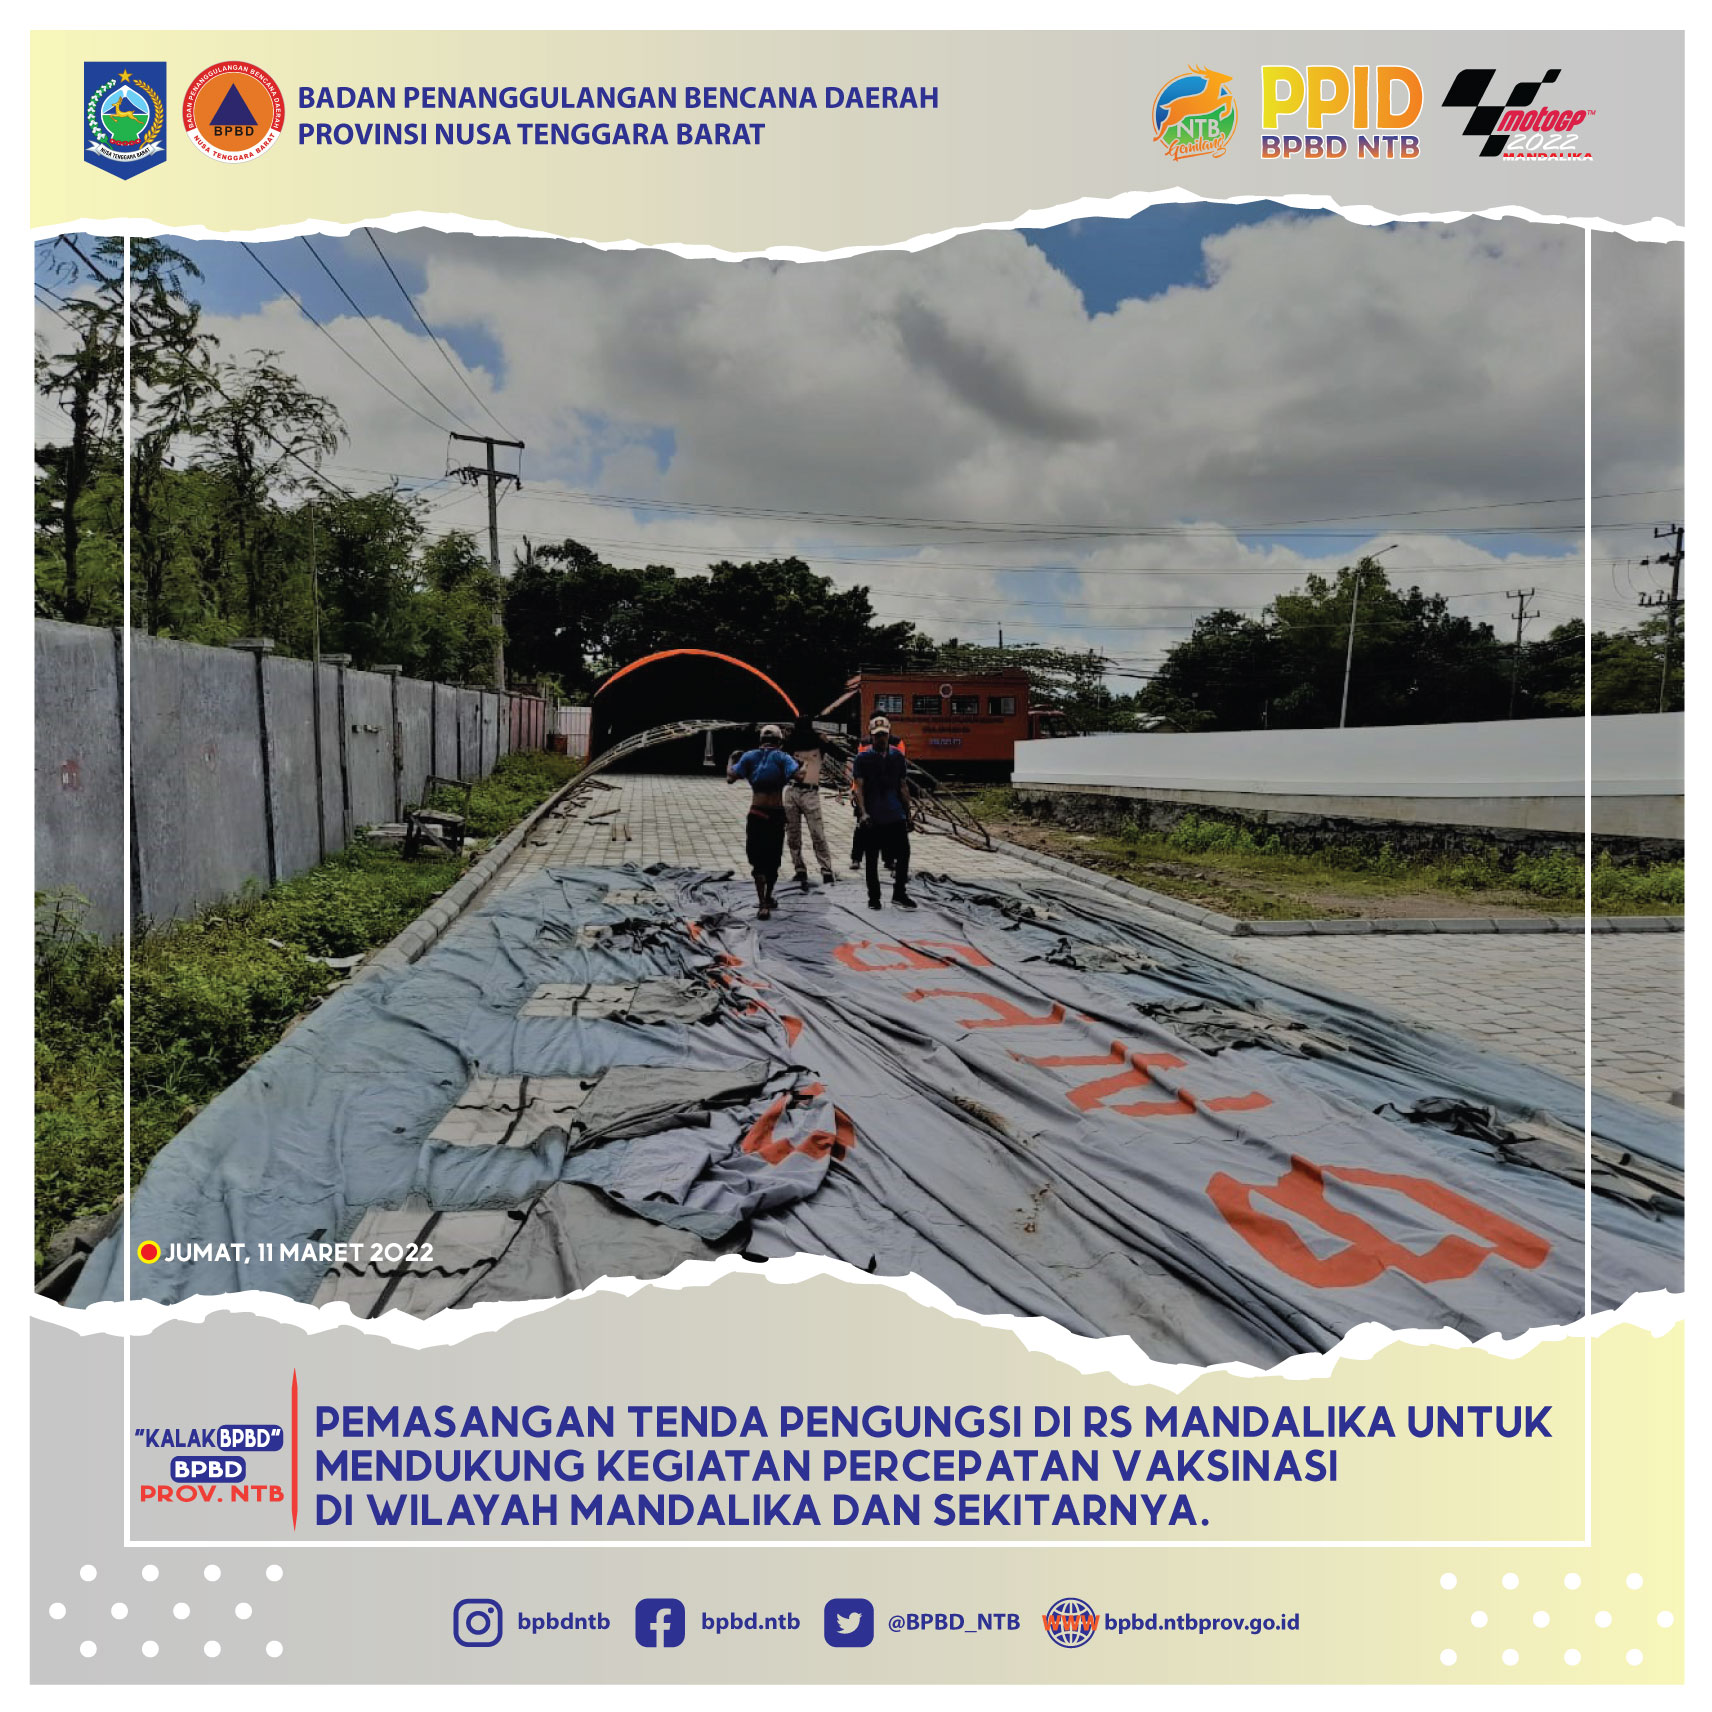 Pemasangan Tenda Pengungsi di RS Mandalika untuk Mendukung Kegiatan Percepatan Vaksinasi di Wilayah Mandalika dan Sekitarnya (Jumat, 11 Maret 2022)